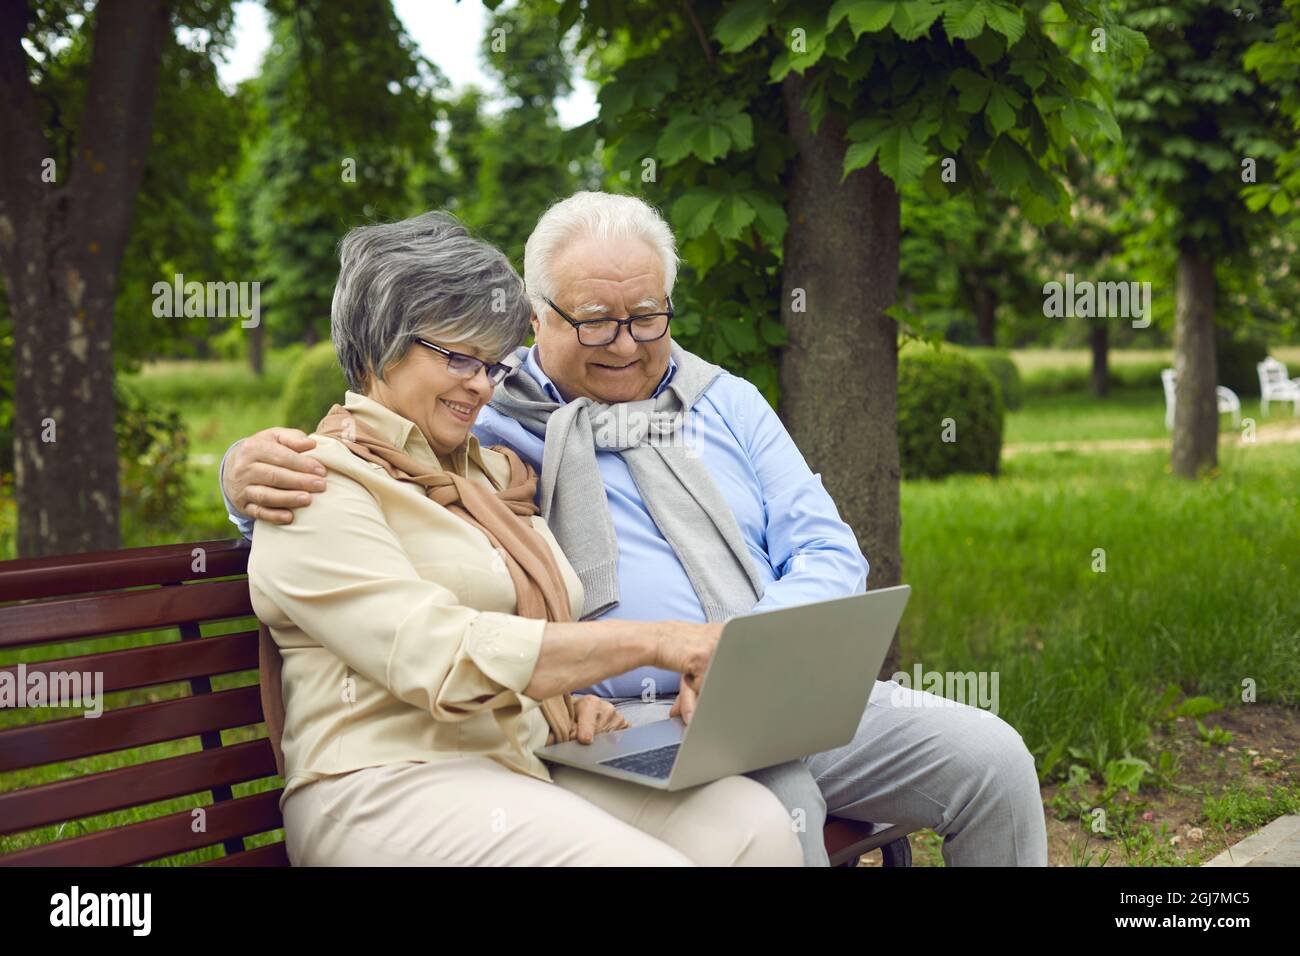 Ein älteres Paar, ein Mann und eine Frau mit europäischem Aussehen, entspannen im Park Stockfoto